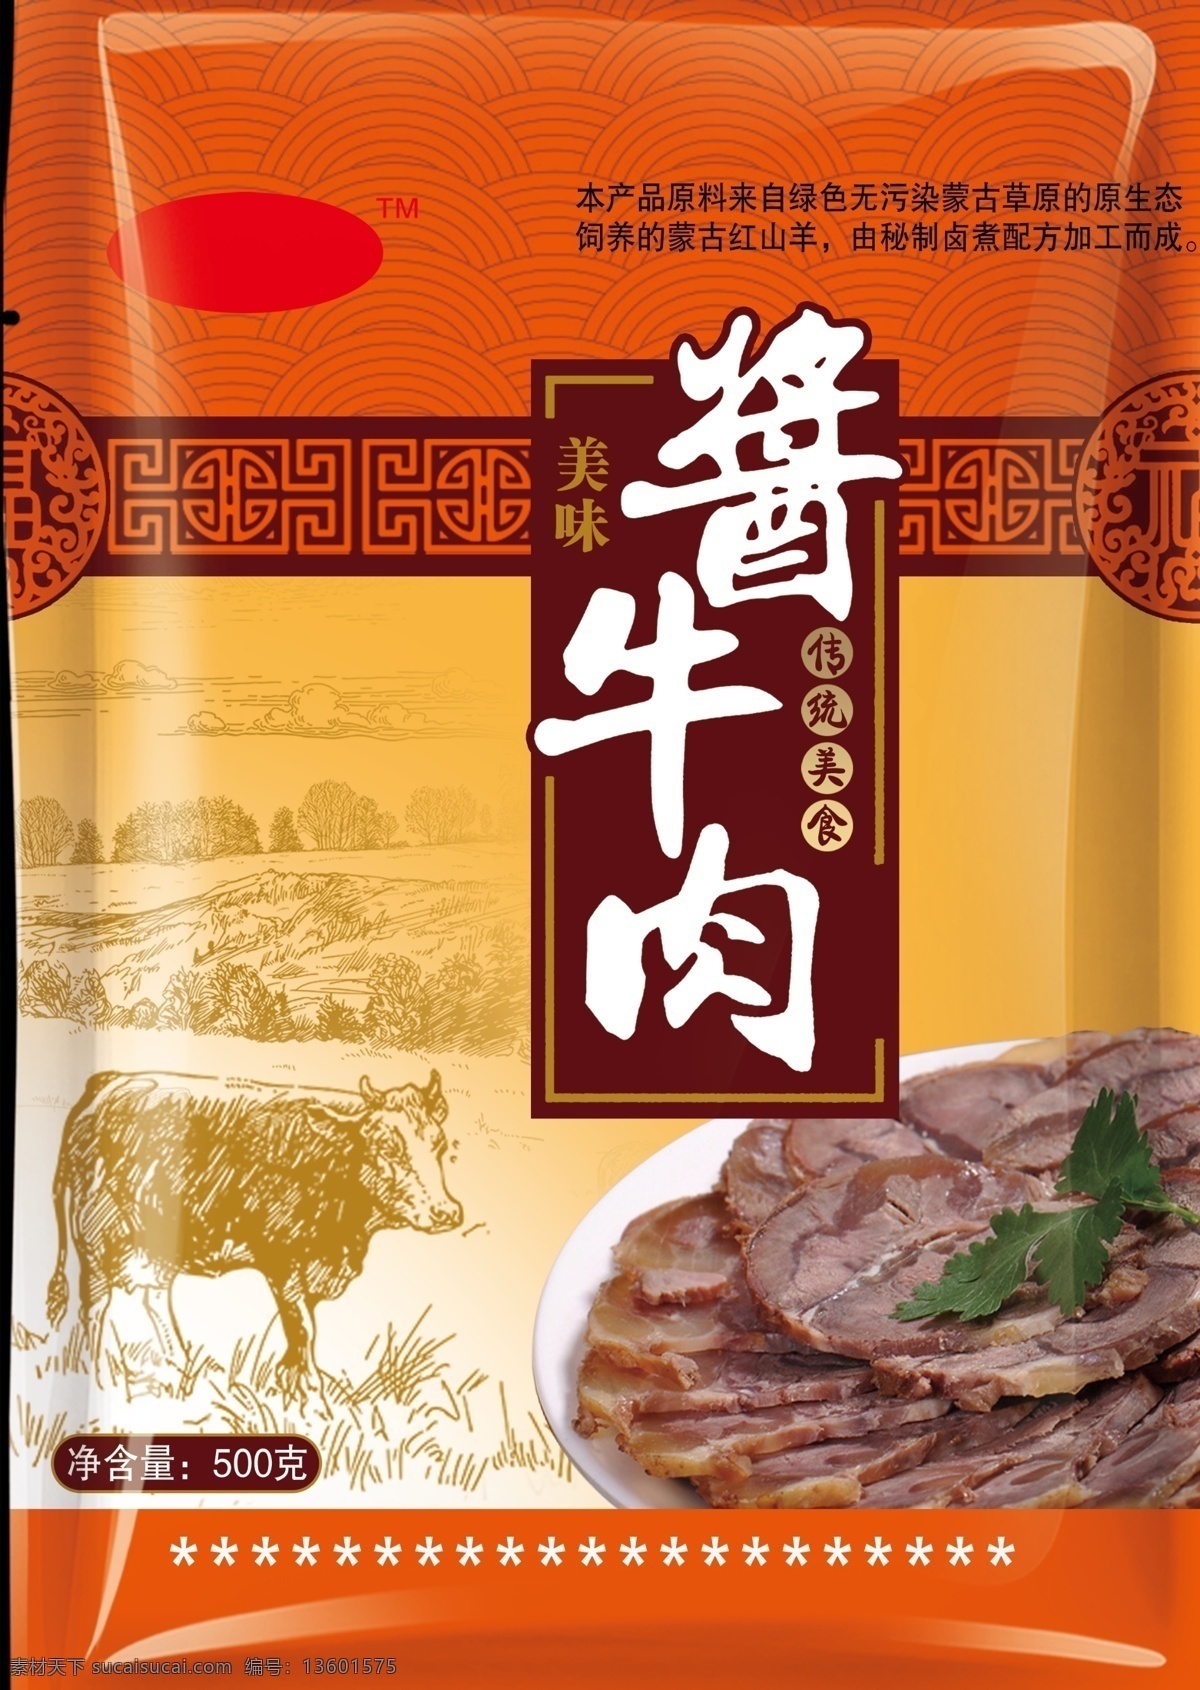 牛肉包装 酱牛肉 广告 平面设计 海报 包装